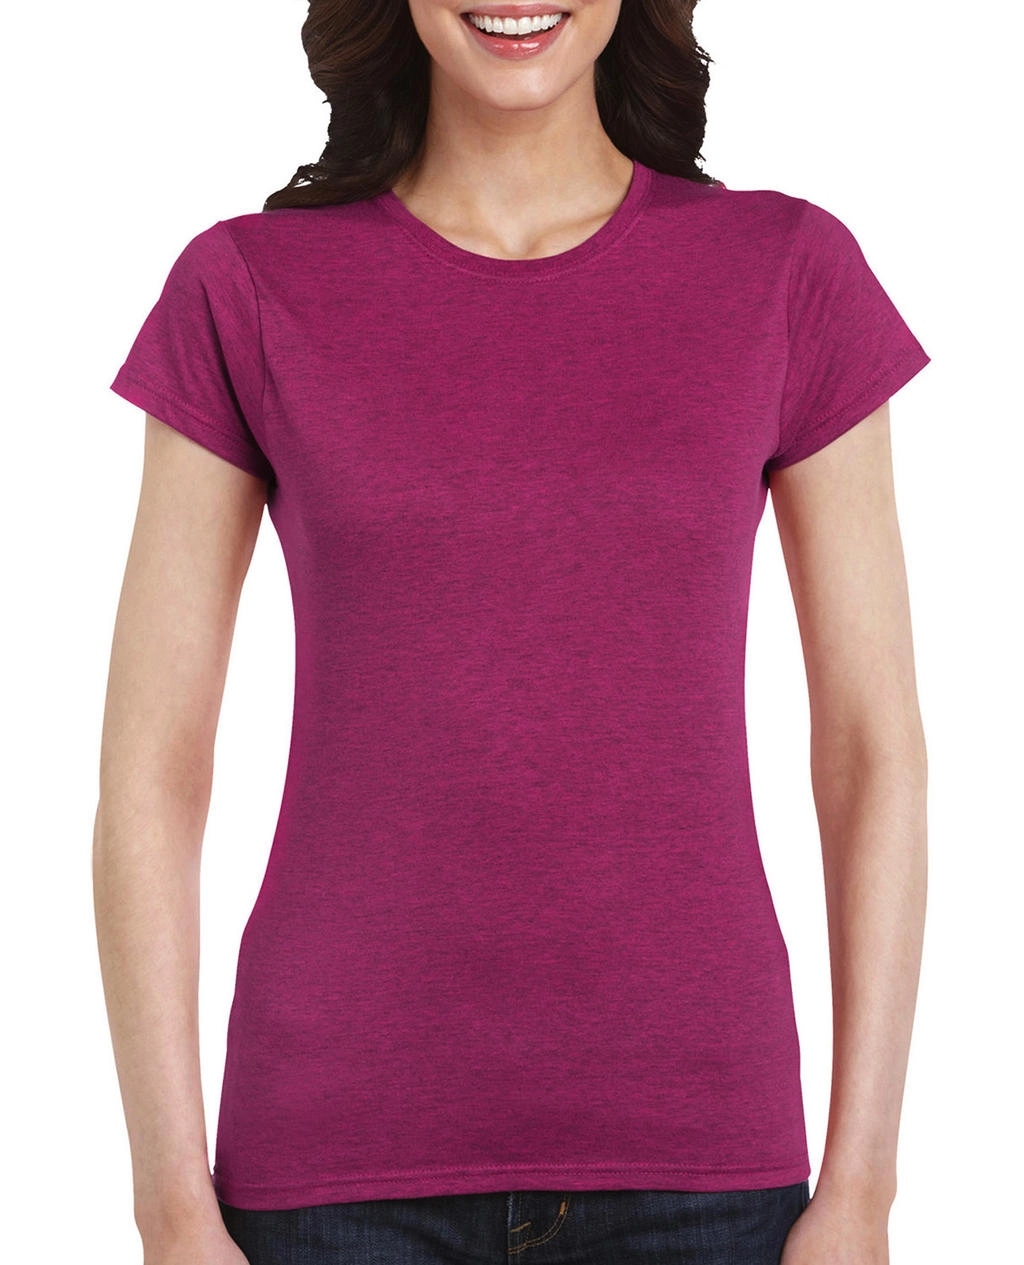 Softstyle® Ladies` T-Shirt zum Besticken und Bedrucken in der Farbe Antique Heliconia mit Ihren Logo, Schriftzug oder Motiv.